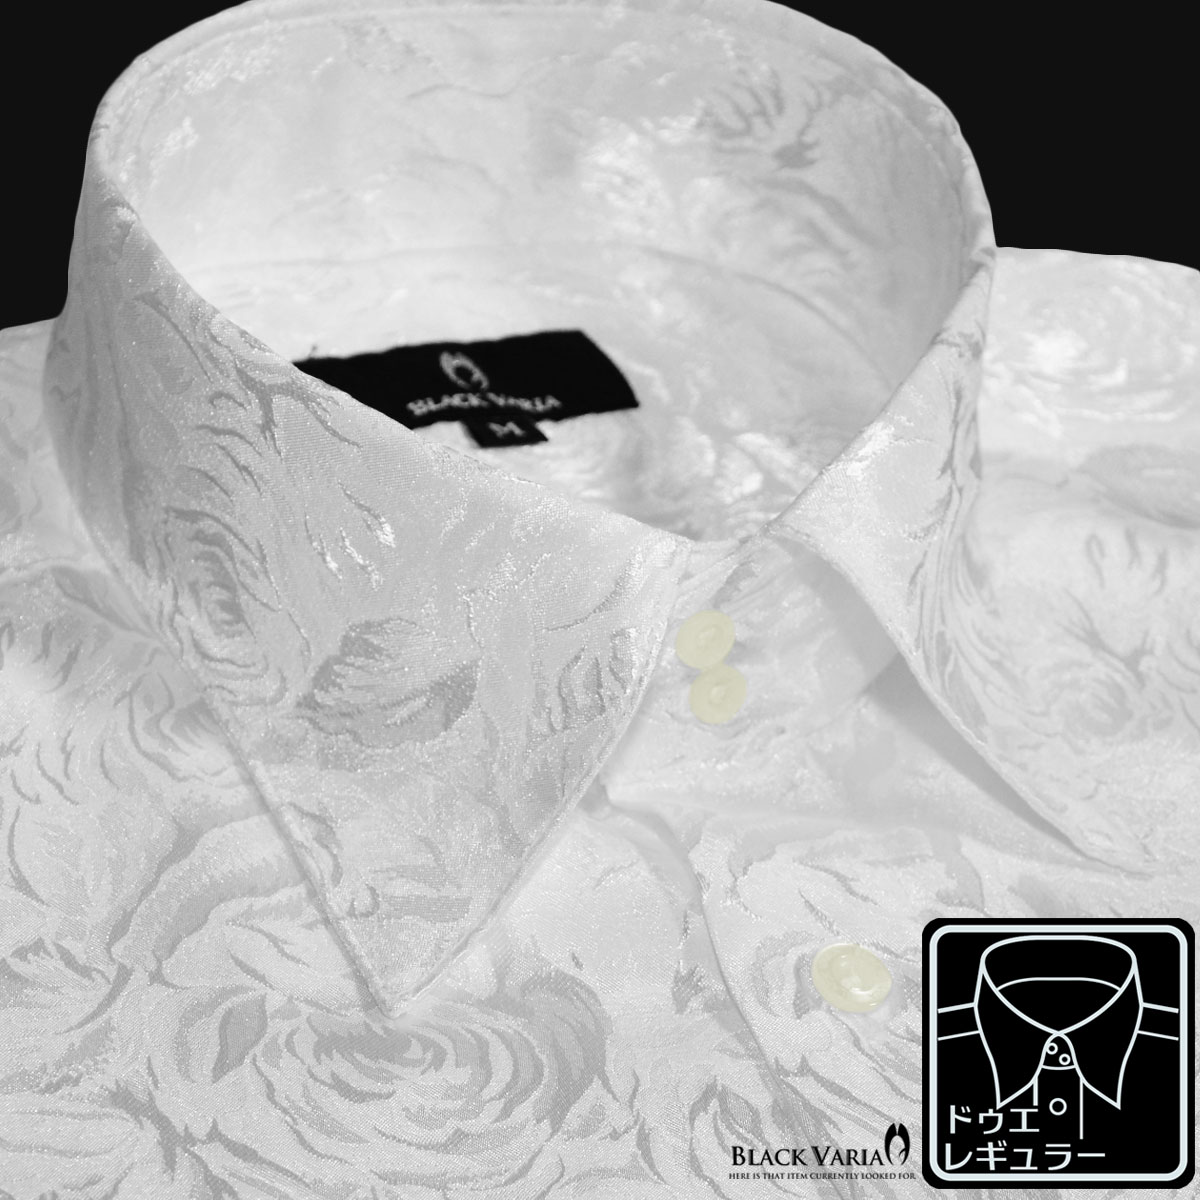 ドゥエボットーニ サテンシャツ ドレスシャツ ドゥエボットーニ 花柄 薔薇 ジャガード 襟高 レギュラーカラー 無地 パーティー メンズ mens ファッション おしゃれ (ホワイト白) 161222